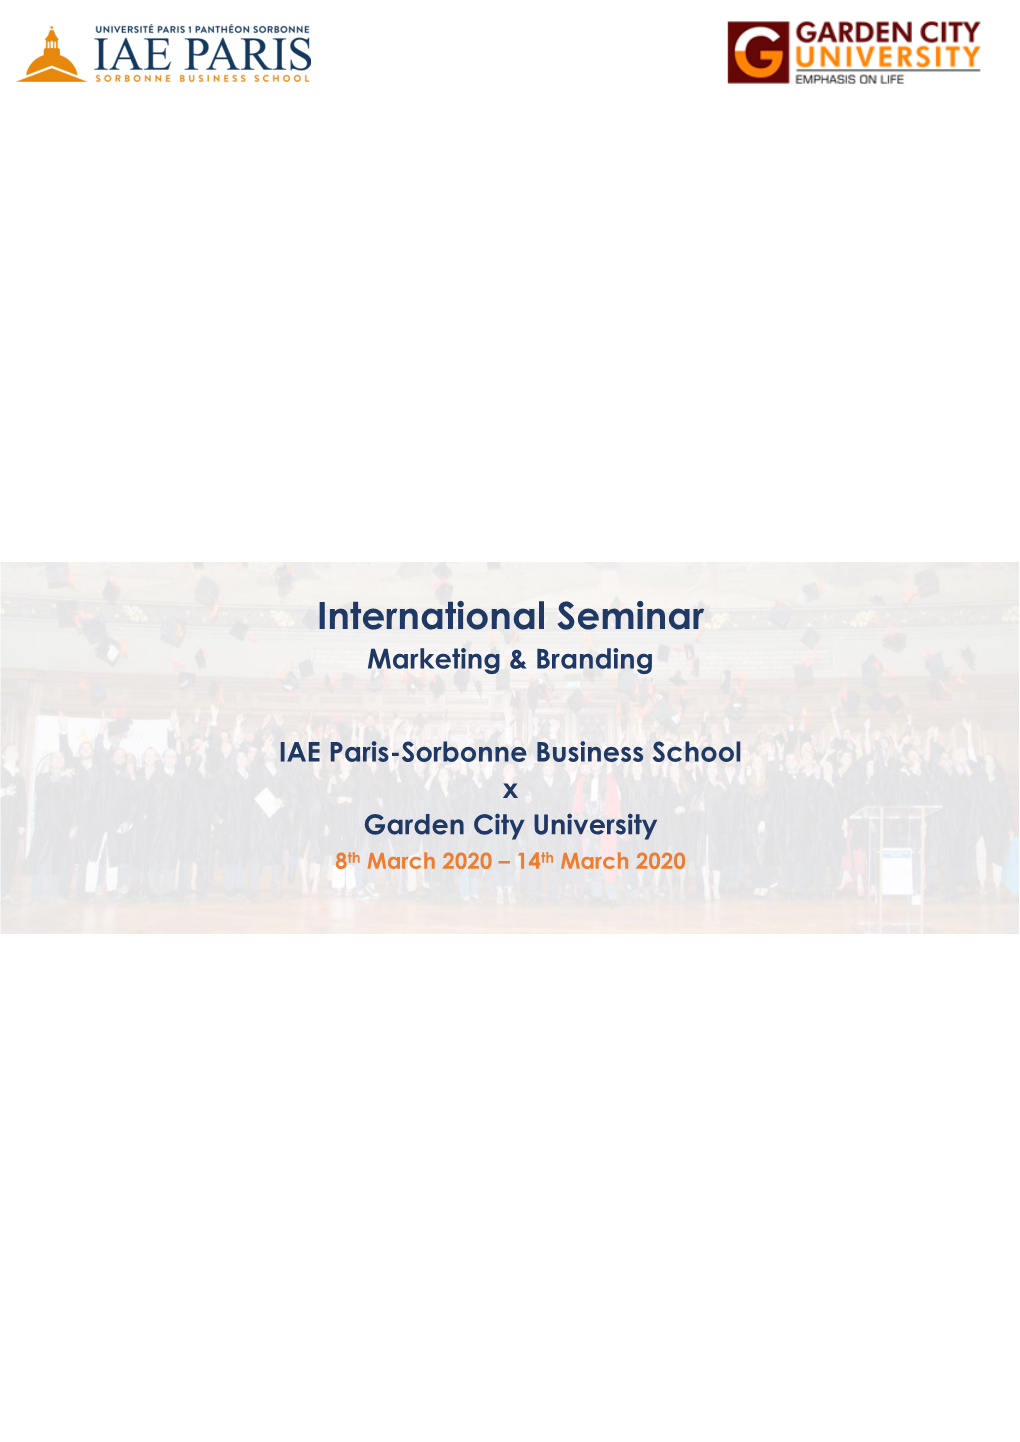 International Seminar Marketing & Branding